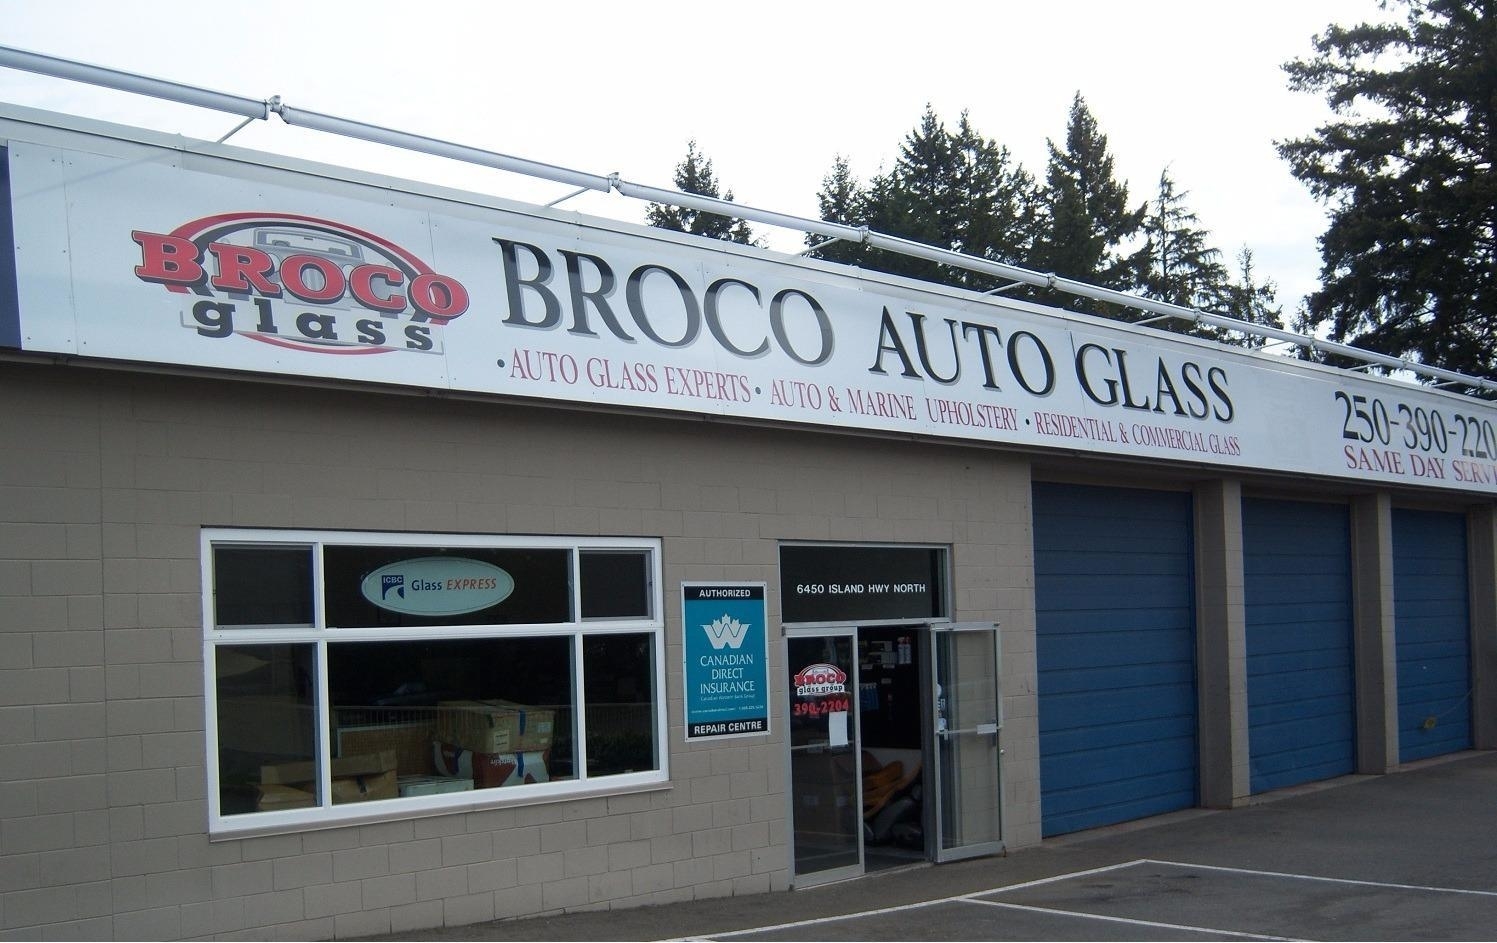 Broco Glass - Auto Glass & Windshields